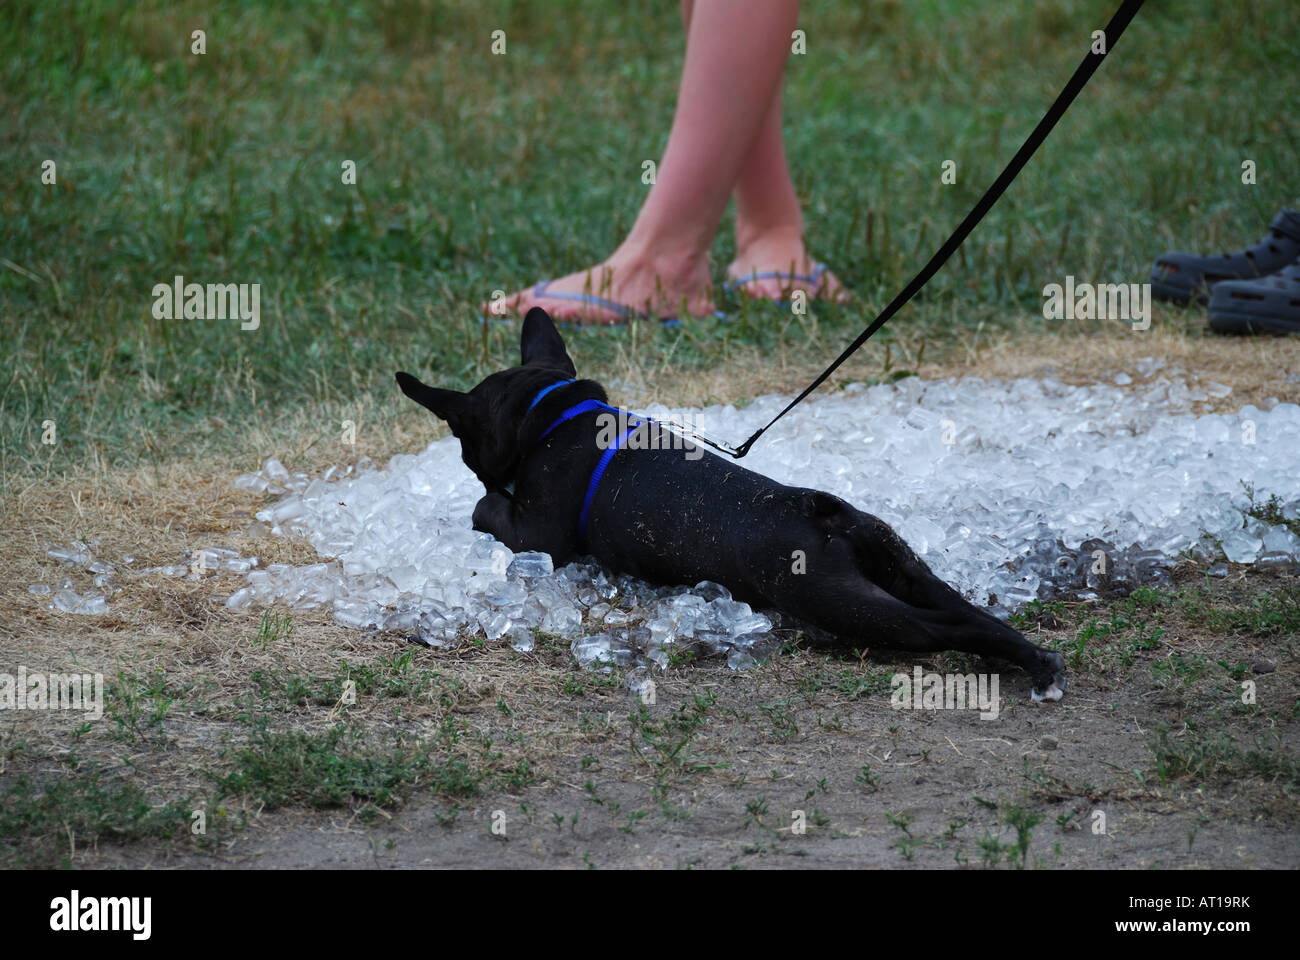 Dog on ice. Stock Photo